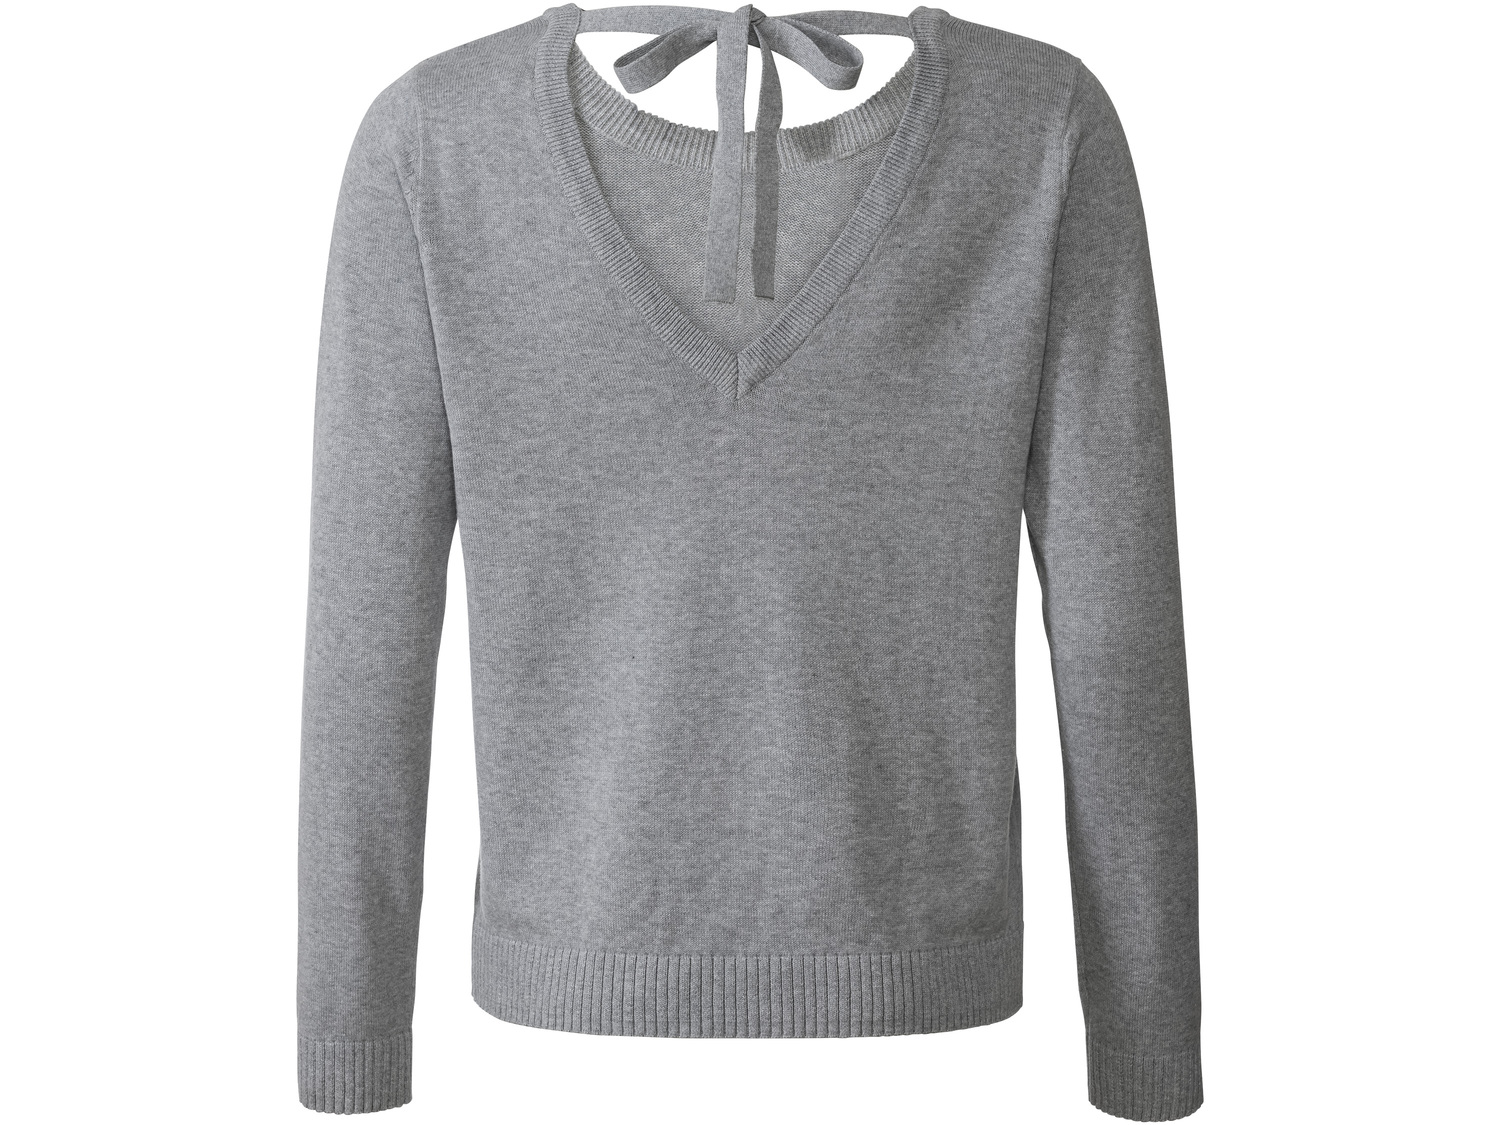 Sweter damski z bawełny Esmara, cena 34,99 PLN 
- 100% bawełny
- rozmiary: XS-L
- ...